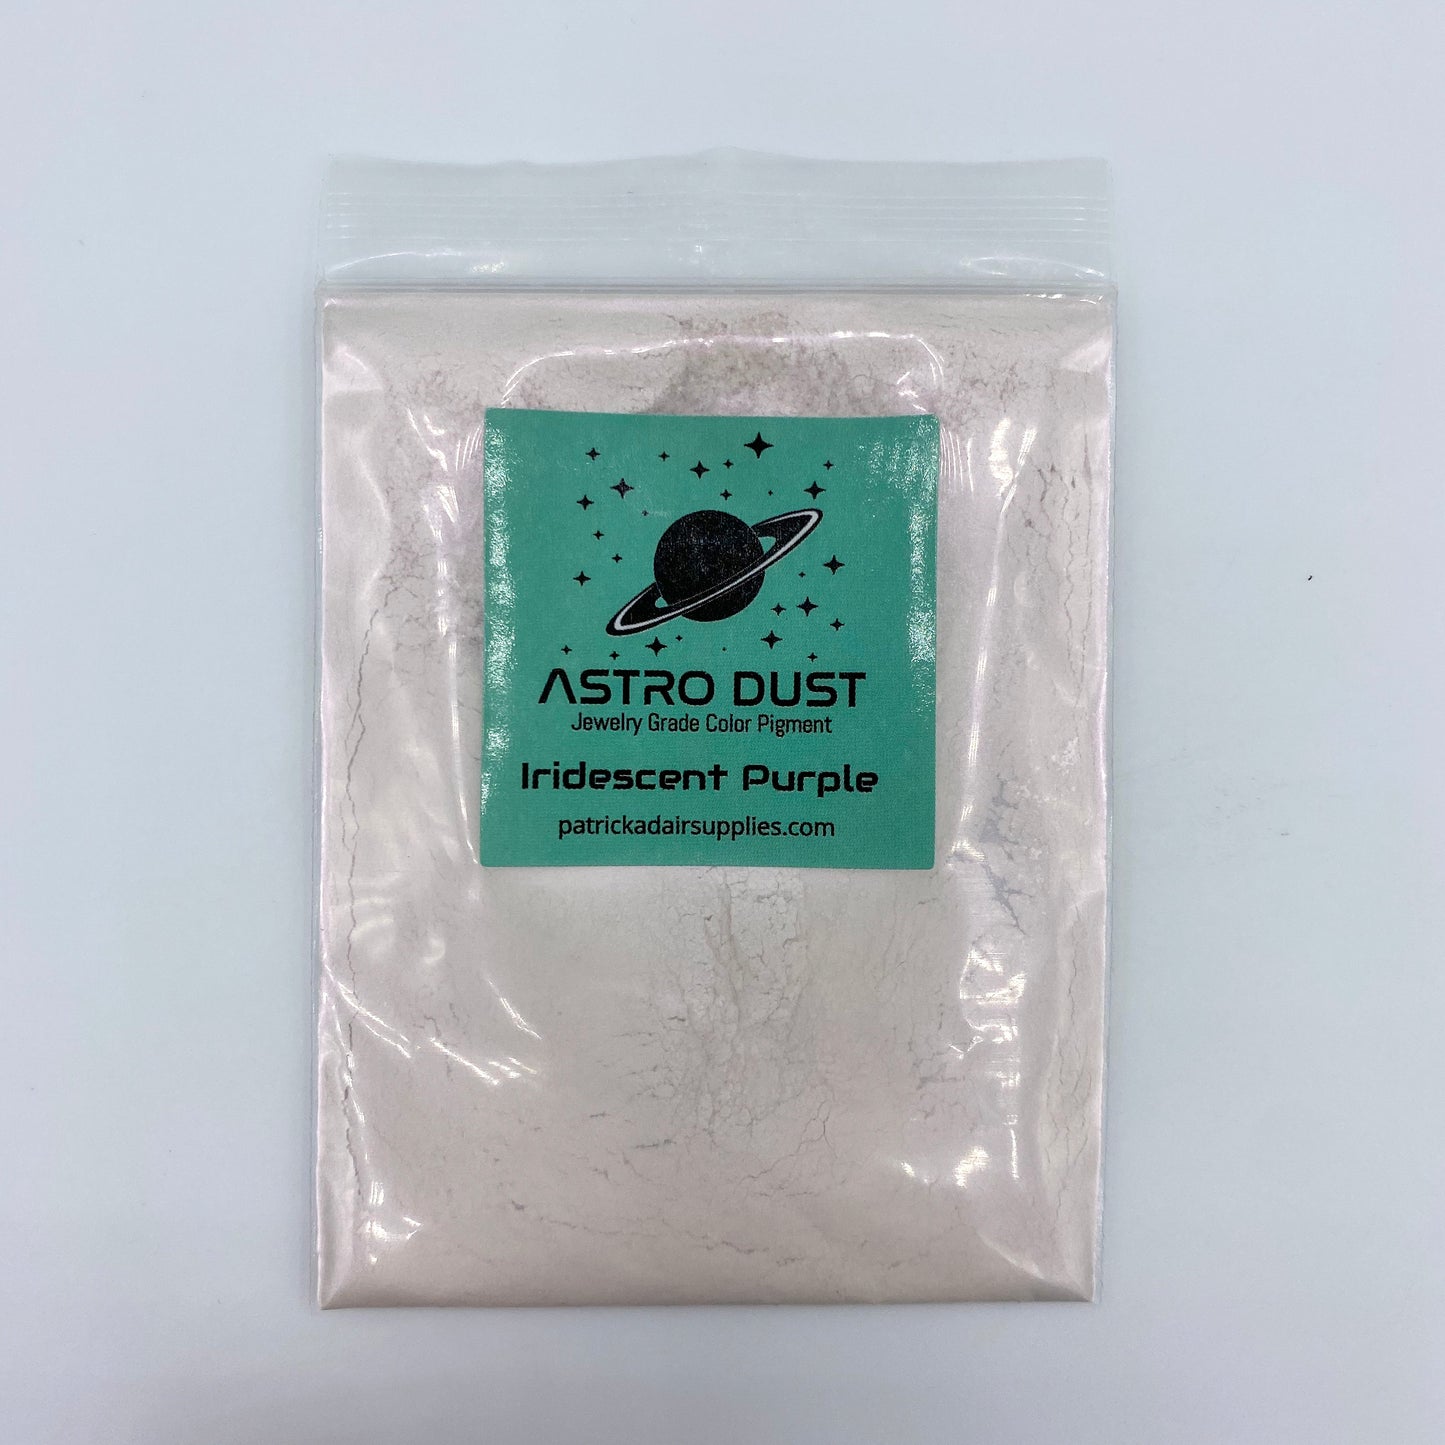 Astro Dust Iridescent Purple Color Pigment - Patrick Adair Supplies